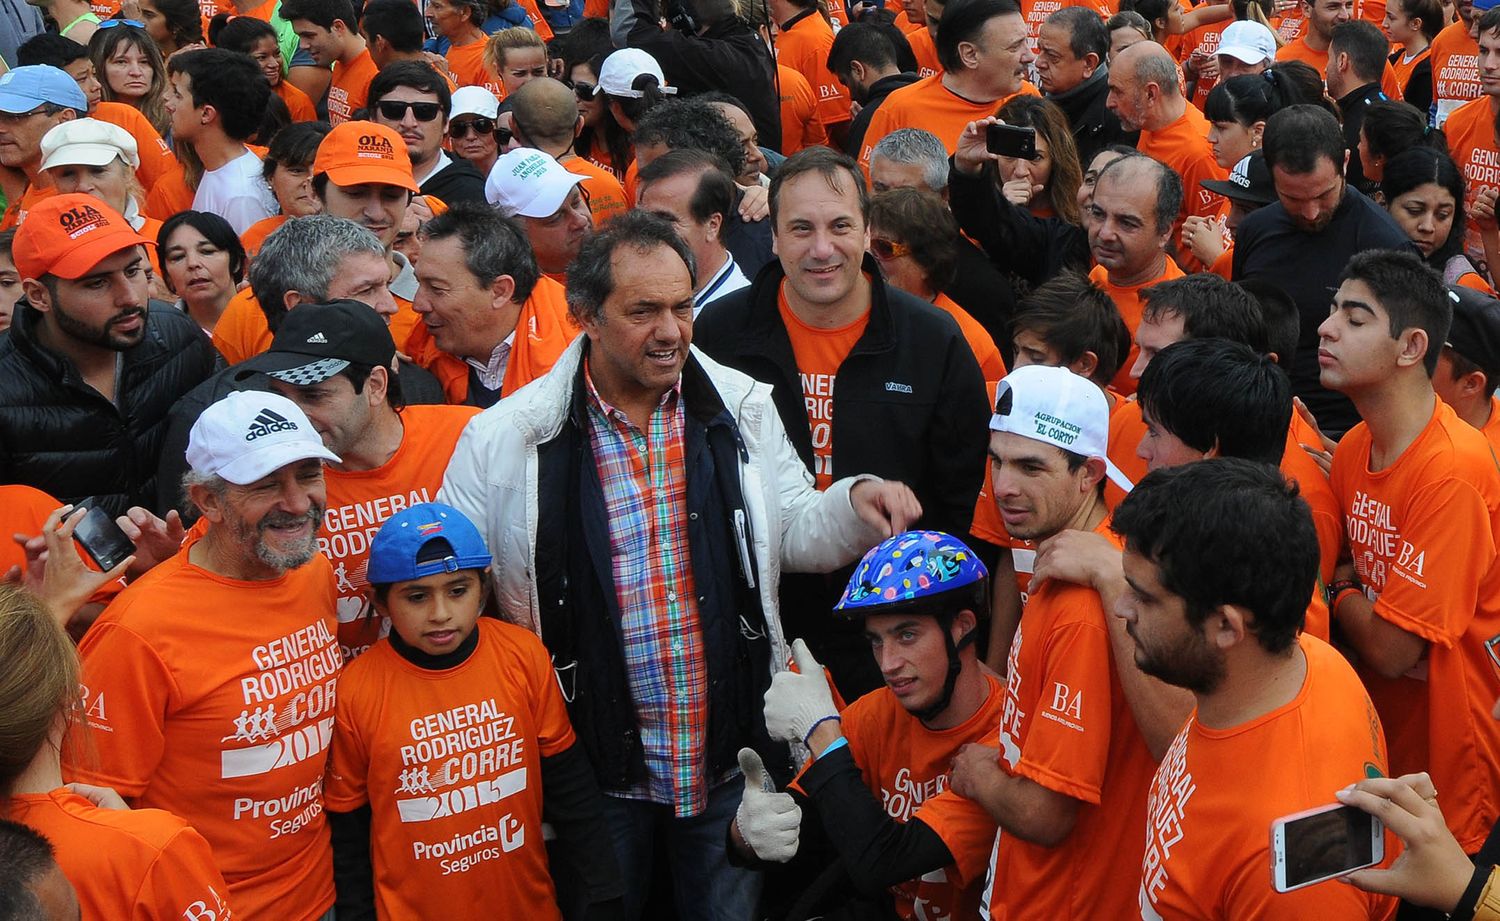 Scioli invitó a "correr al futuro" en la maratón de General Rodríguez